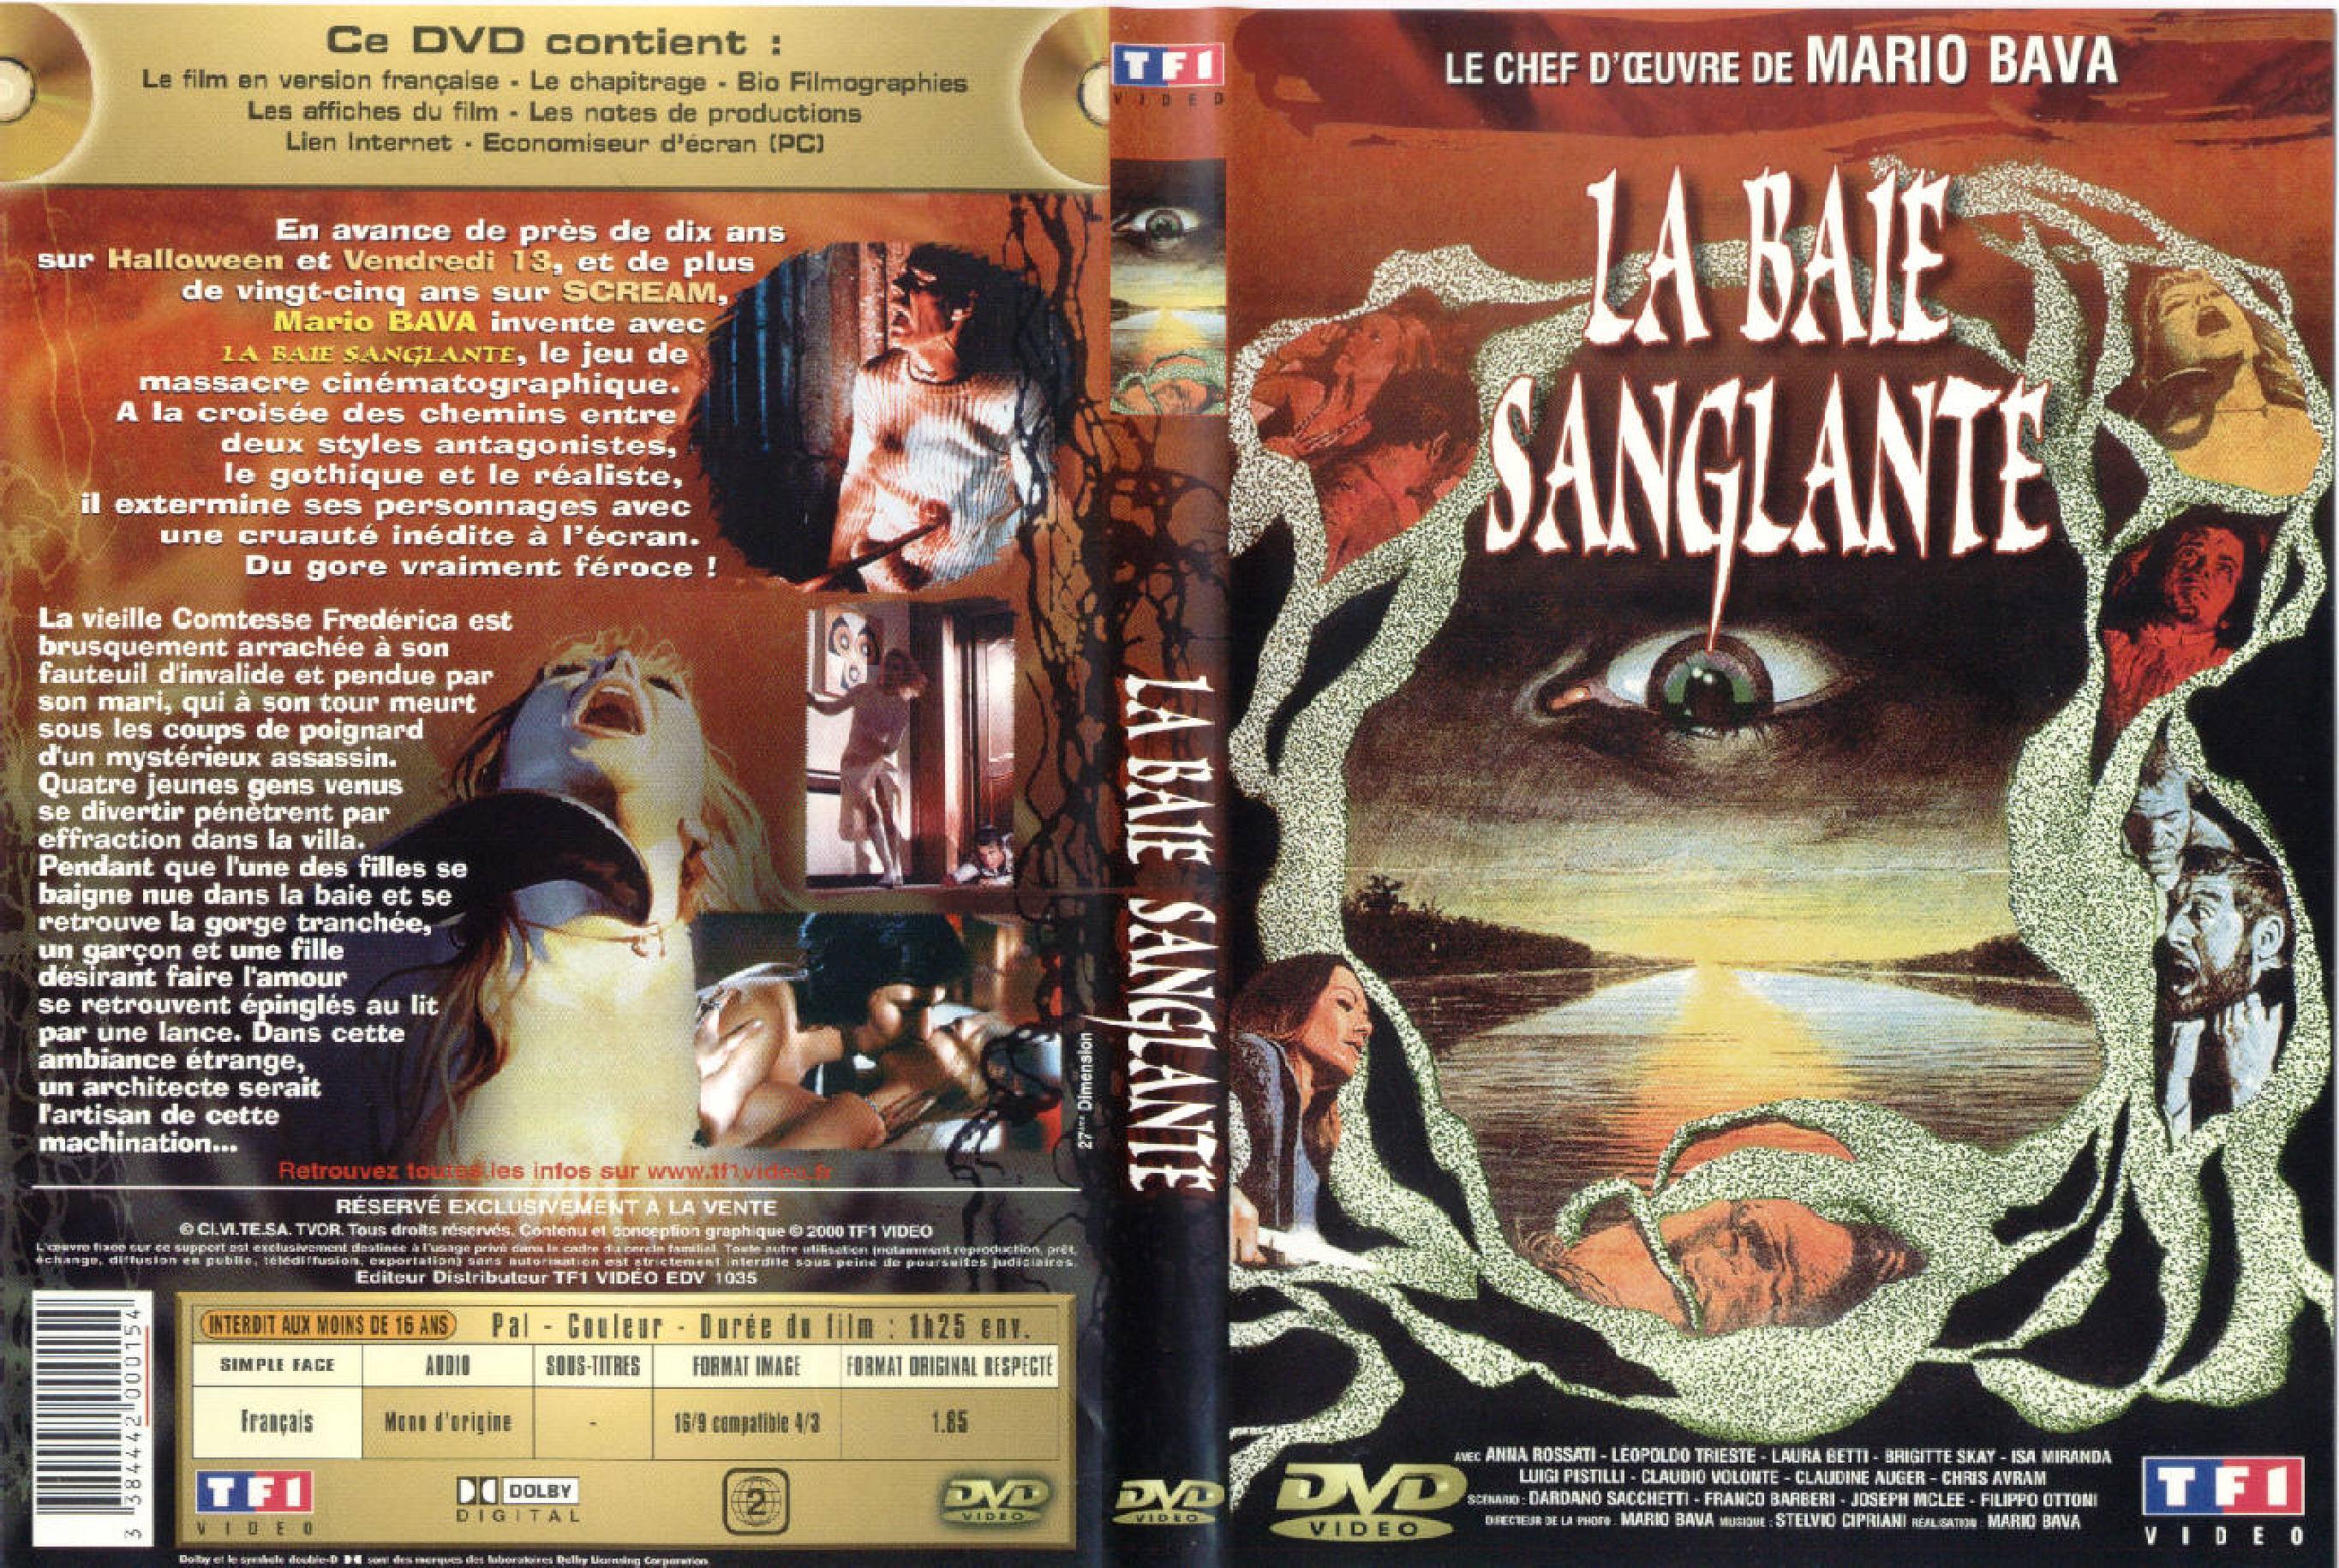 Jaquette DVD La baie sanglante v3